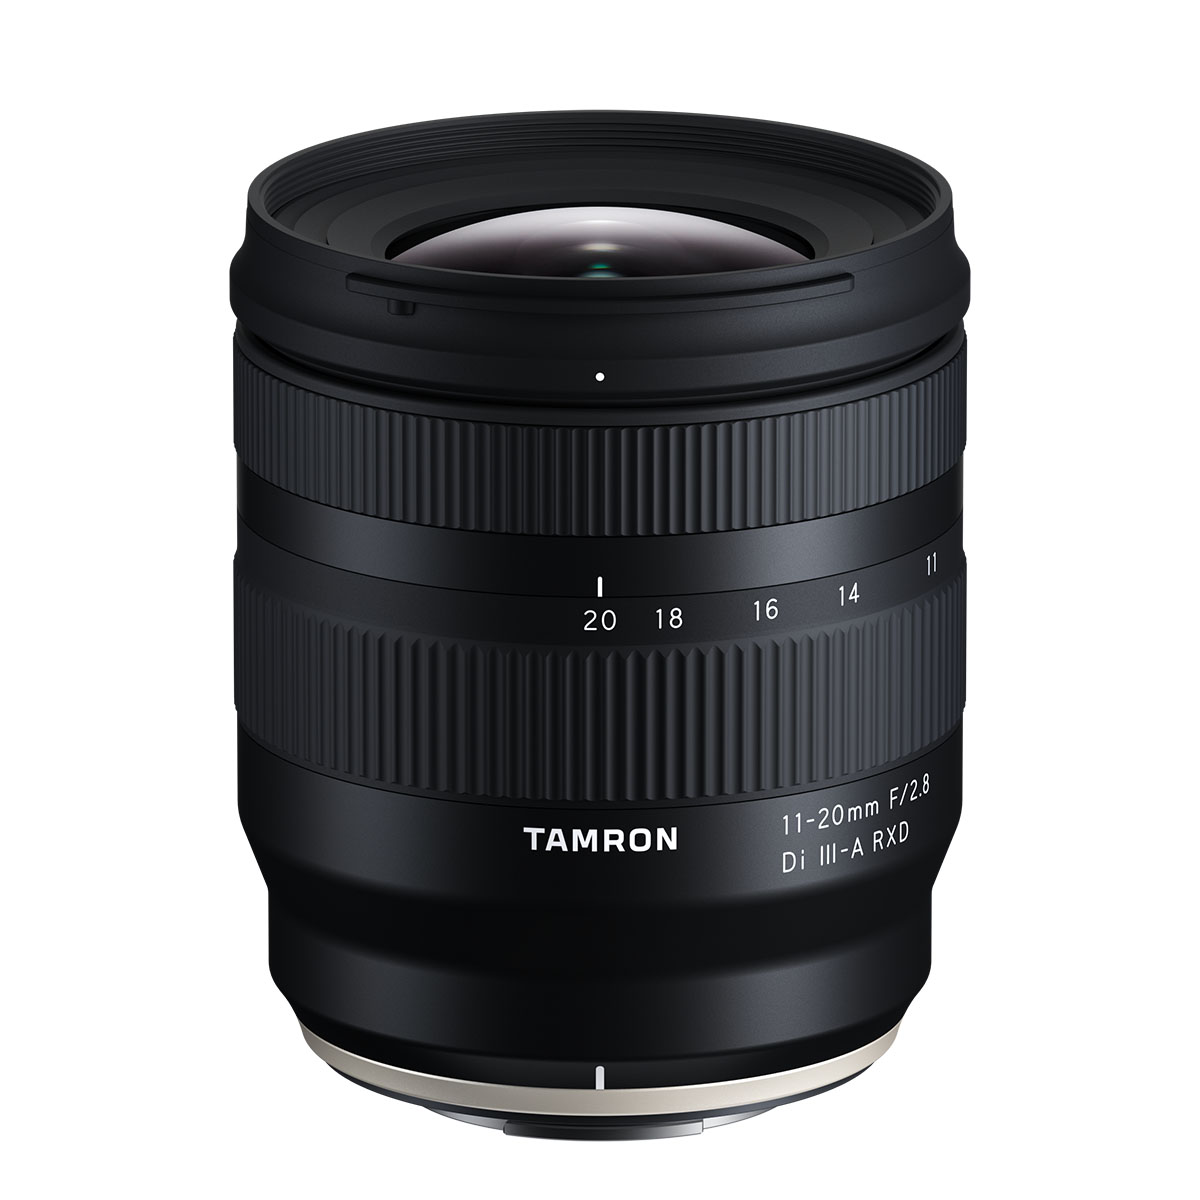 Tamron ra mắt ống kính góc rộng 11-20mm F2.8 cho Fujifilm X